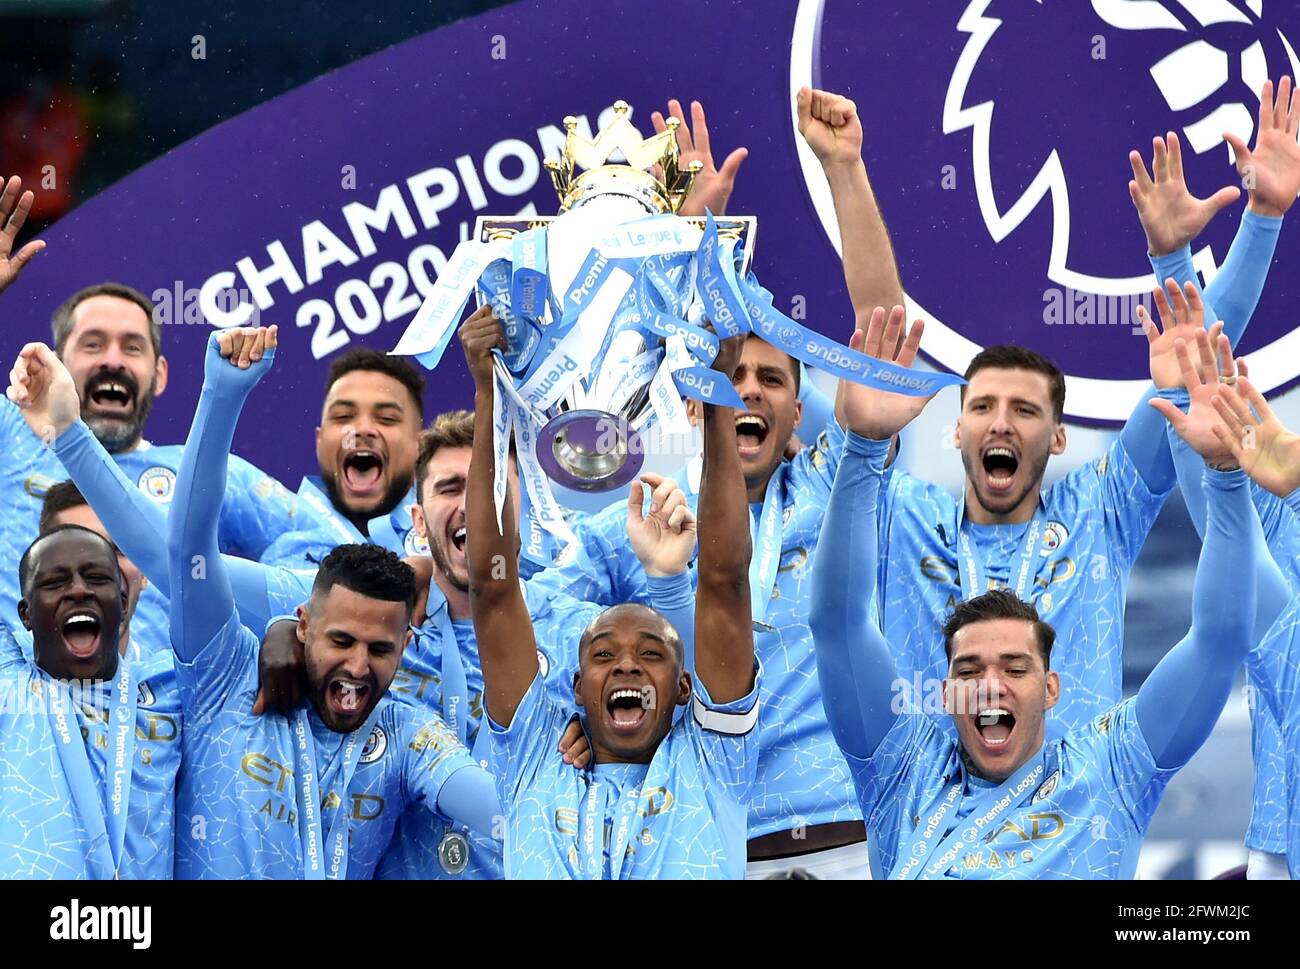 Fernandinho de Manchester City lève le trophée après le match de la Premier League au Etihad Stadium de Manchester. Date de la photo: Dimanche 23 mai 2021. Banque D'Images